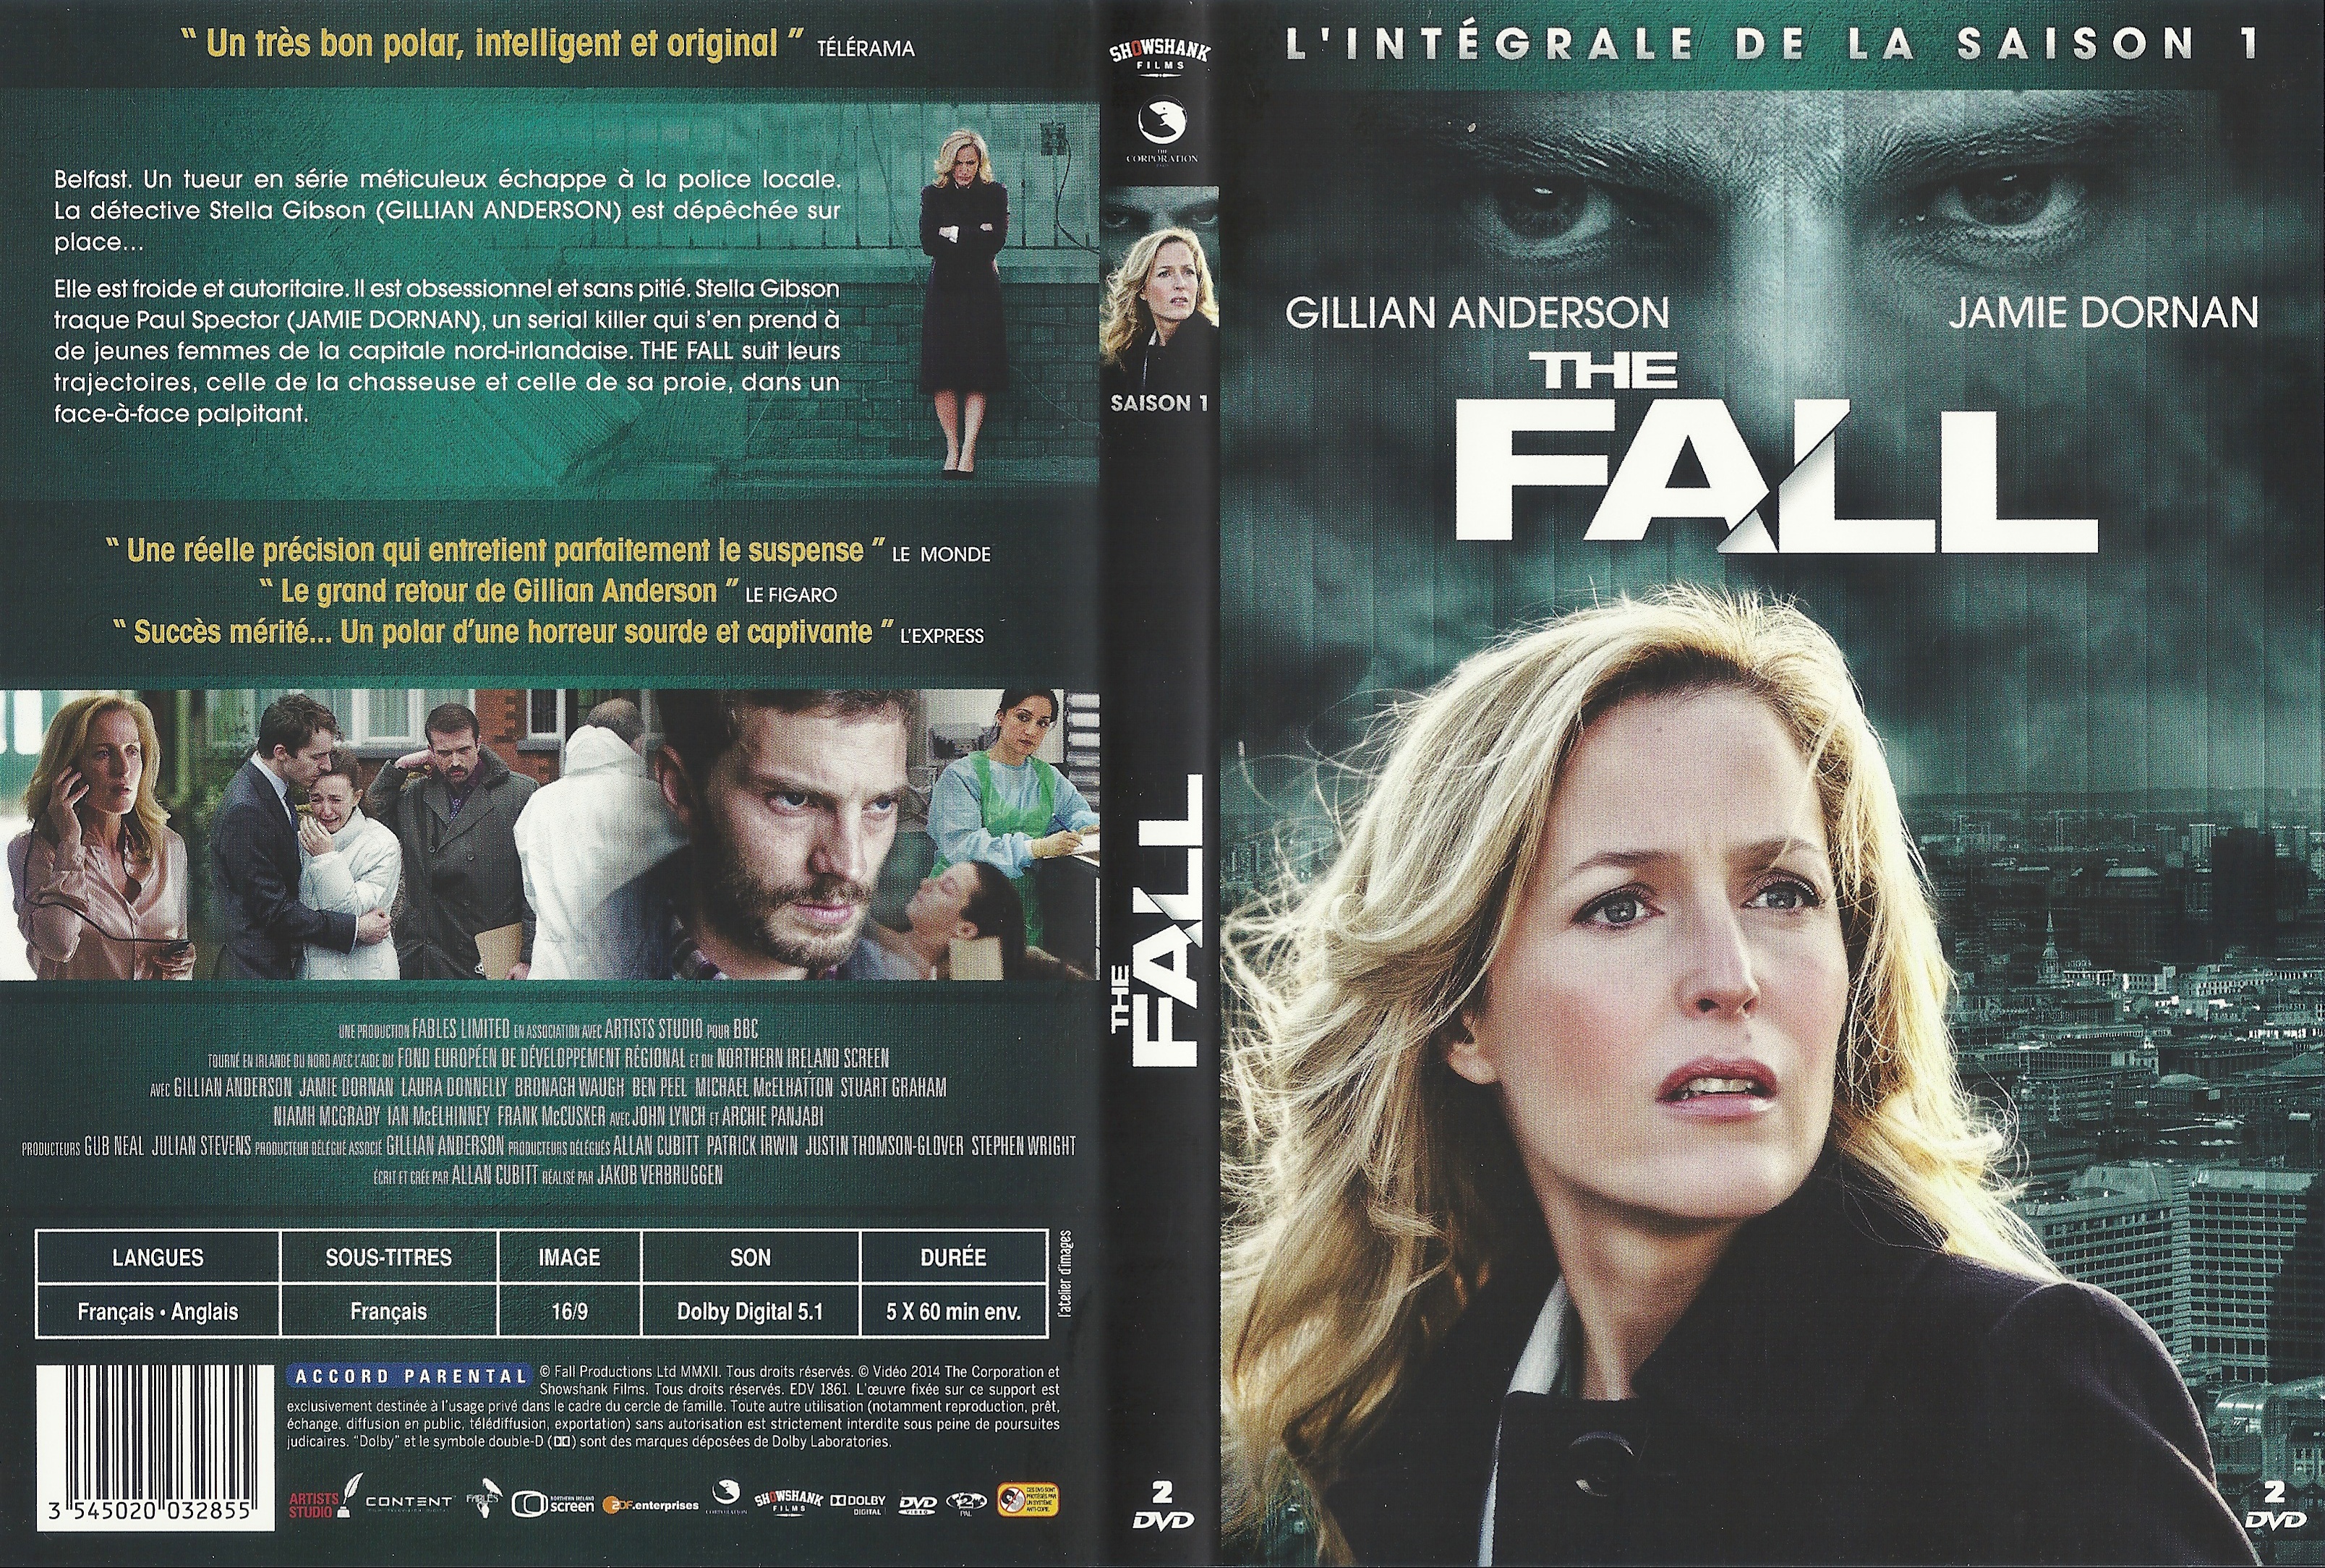 Jaquette DVD The fall Saison 1 COFFRET